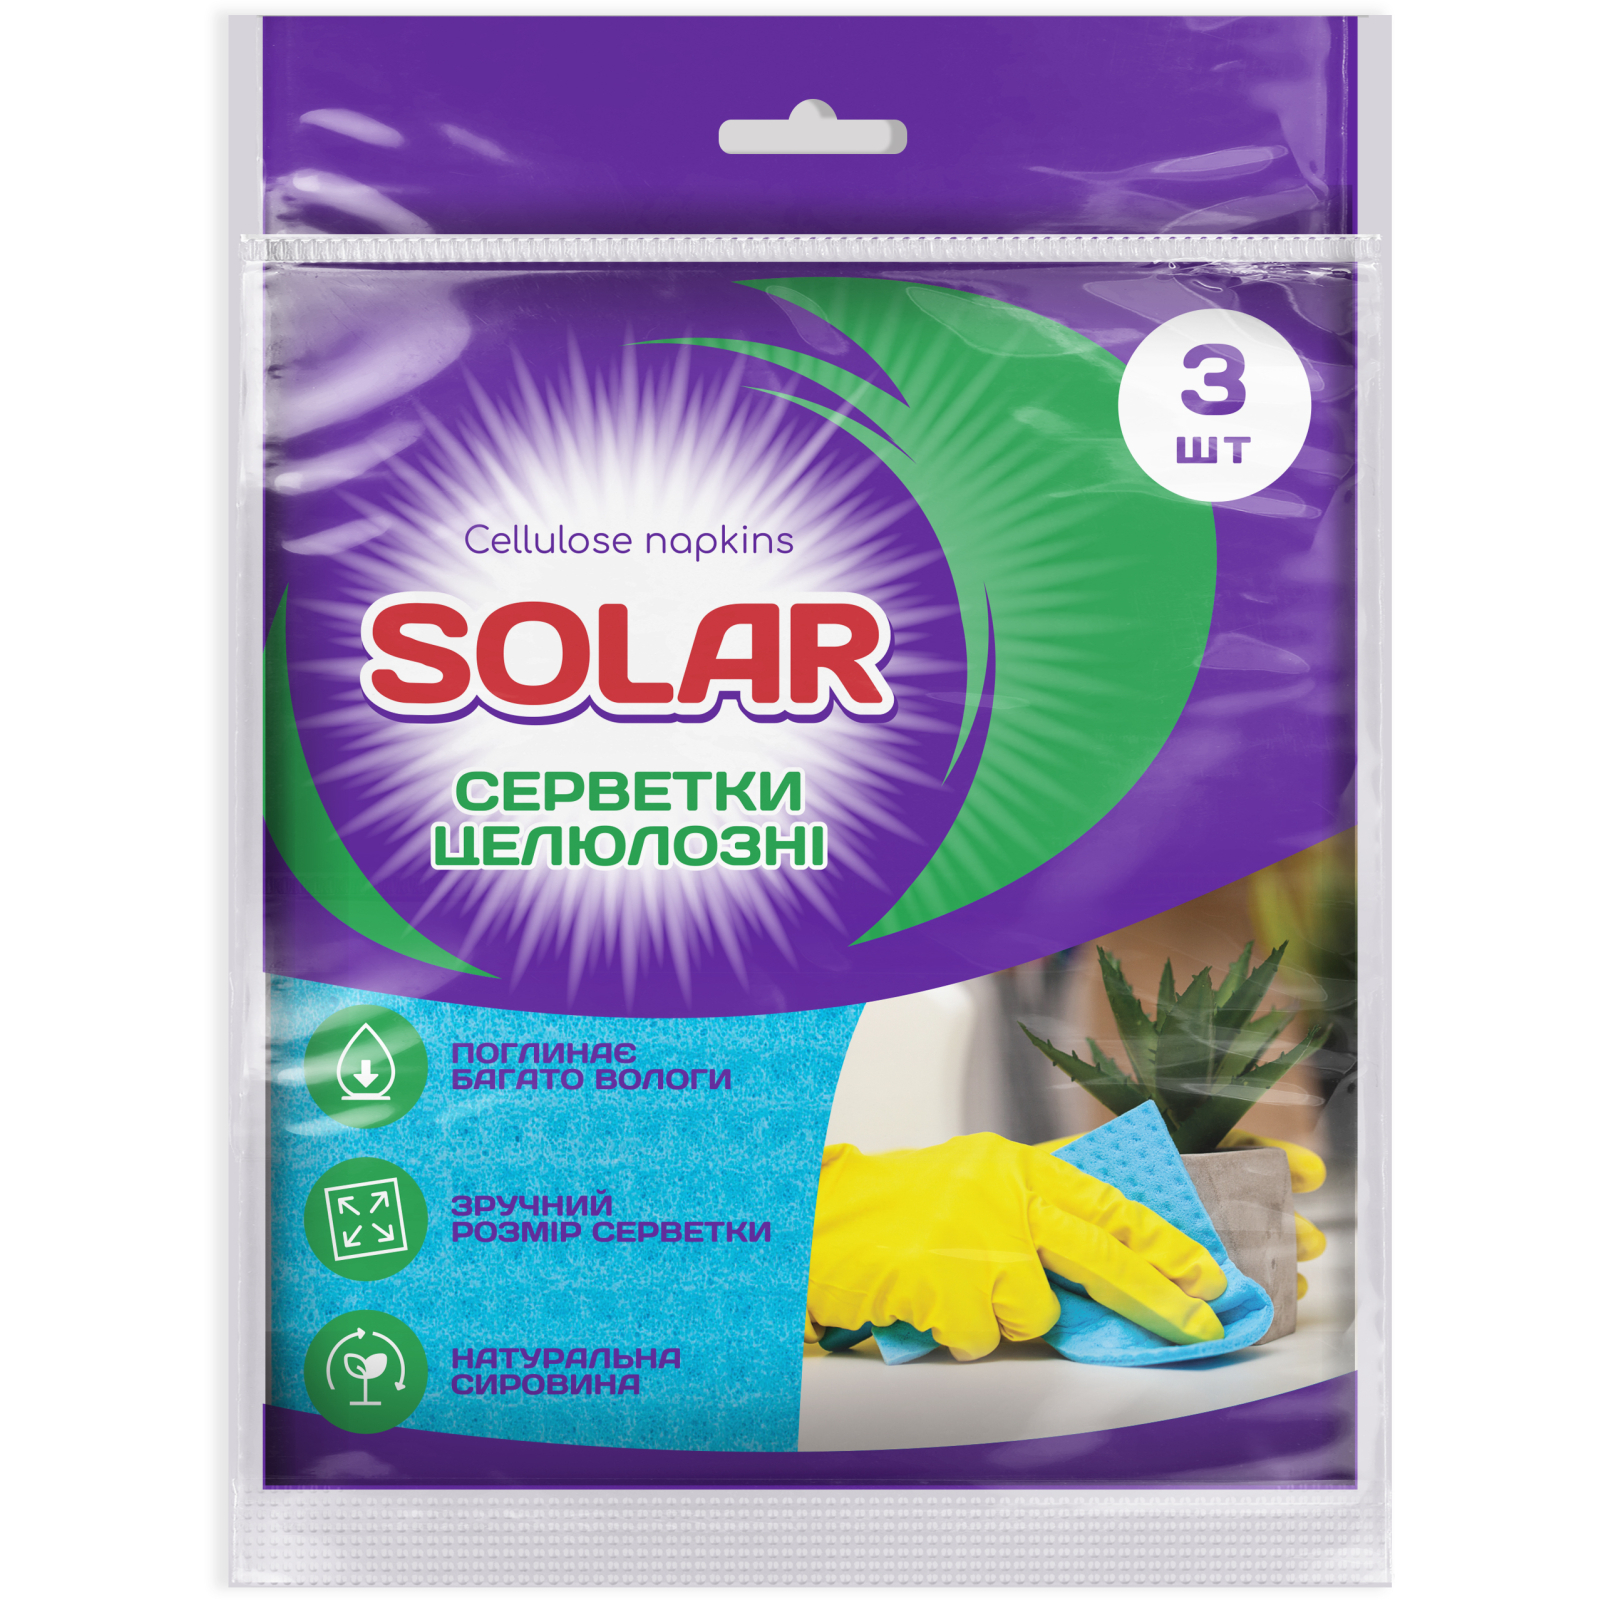 Салфетки для уборки Solar Household Целлюлозные влагопоглощающие 3 шт. (4820269930179)